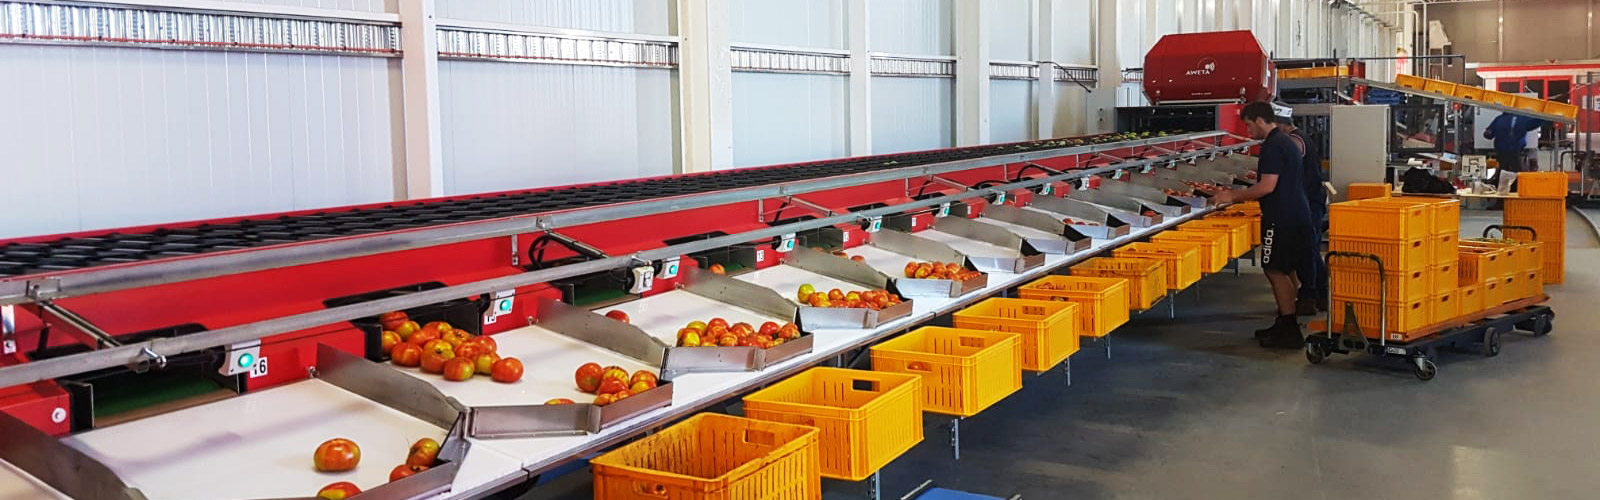 Tomato sorting machine for Australia